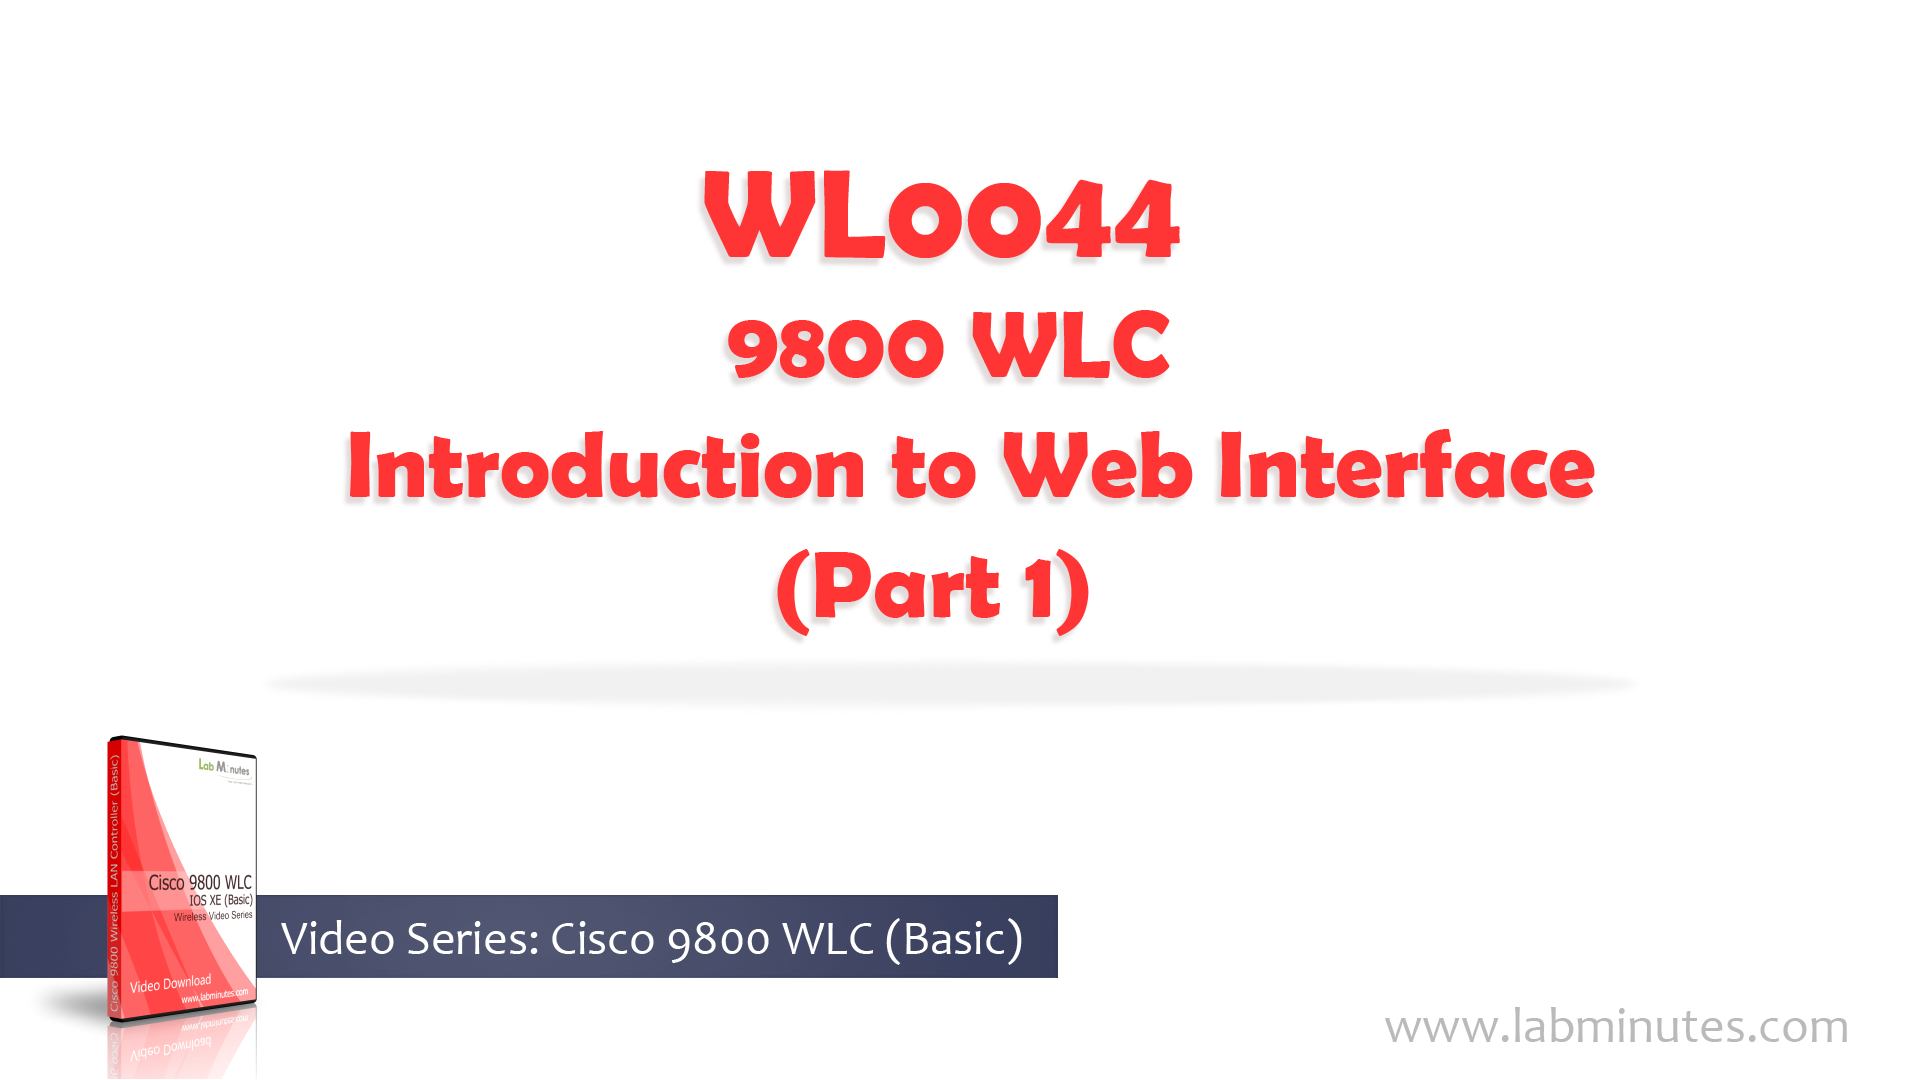 WL0044-1.jpg